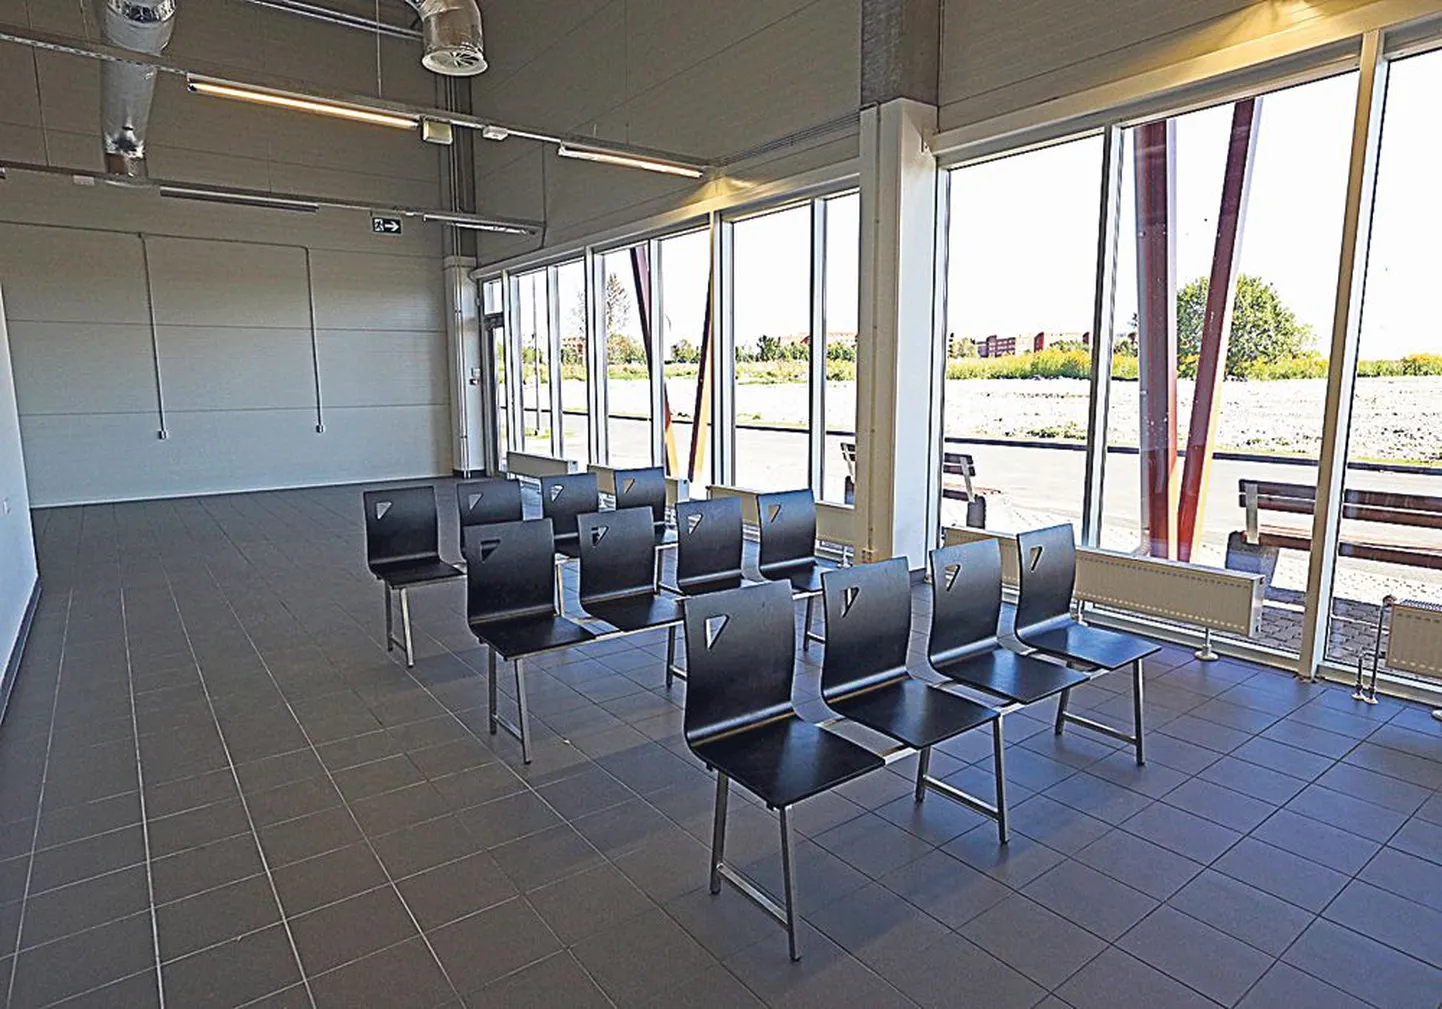 Еще несколько дней назад в помещении нового автобусного вокзала Кохтла-Ярве не было ничего, кроме 12 одиноко стоящих стульев.